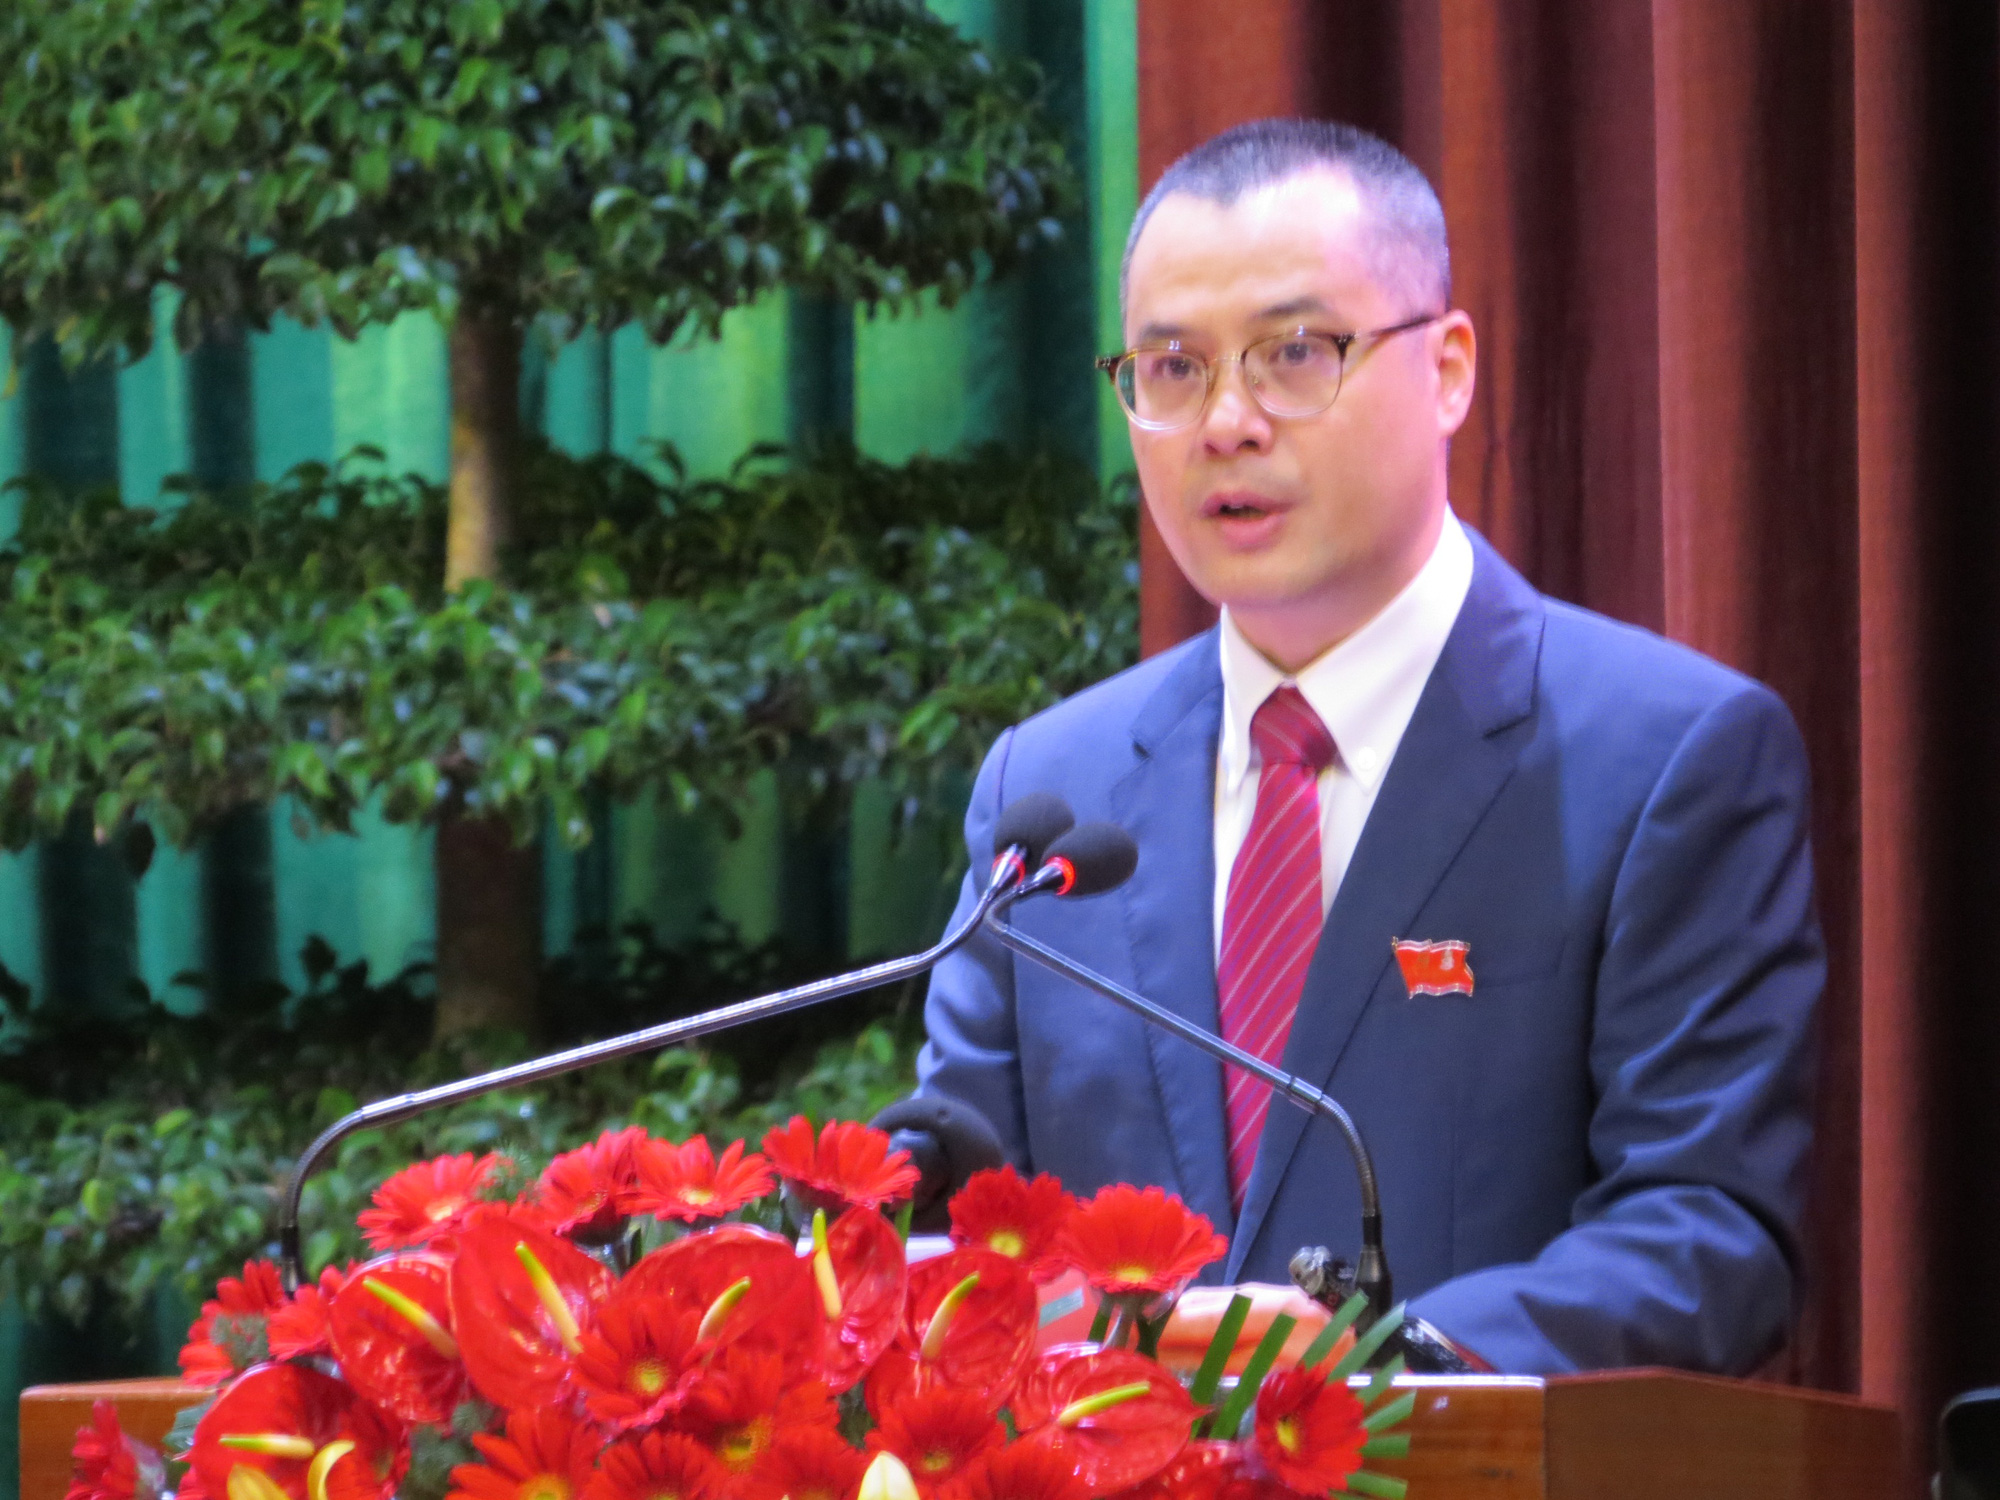 Đại hội Đảng bộ tỉnh Phú Yên lần thứ XVII: Tìm hướng phát triển bền vững - Ảnh 2.